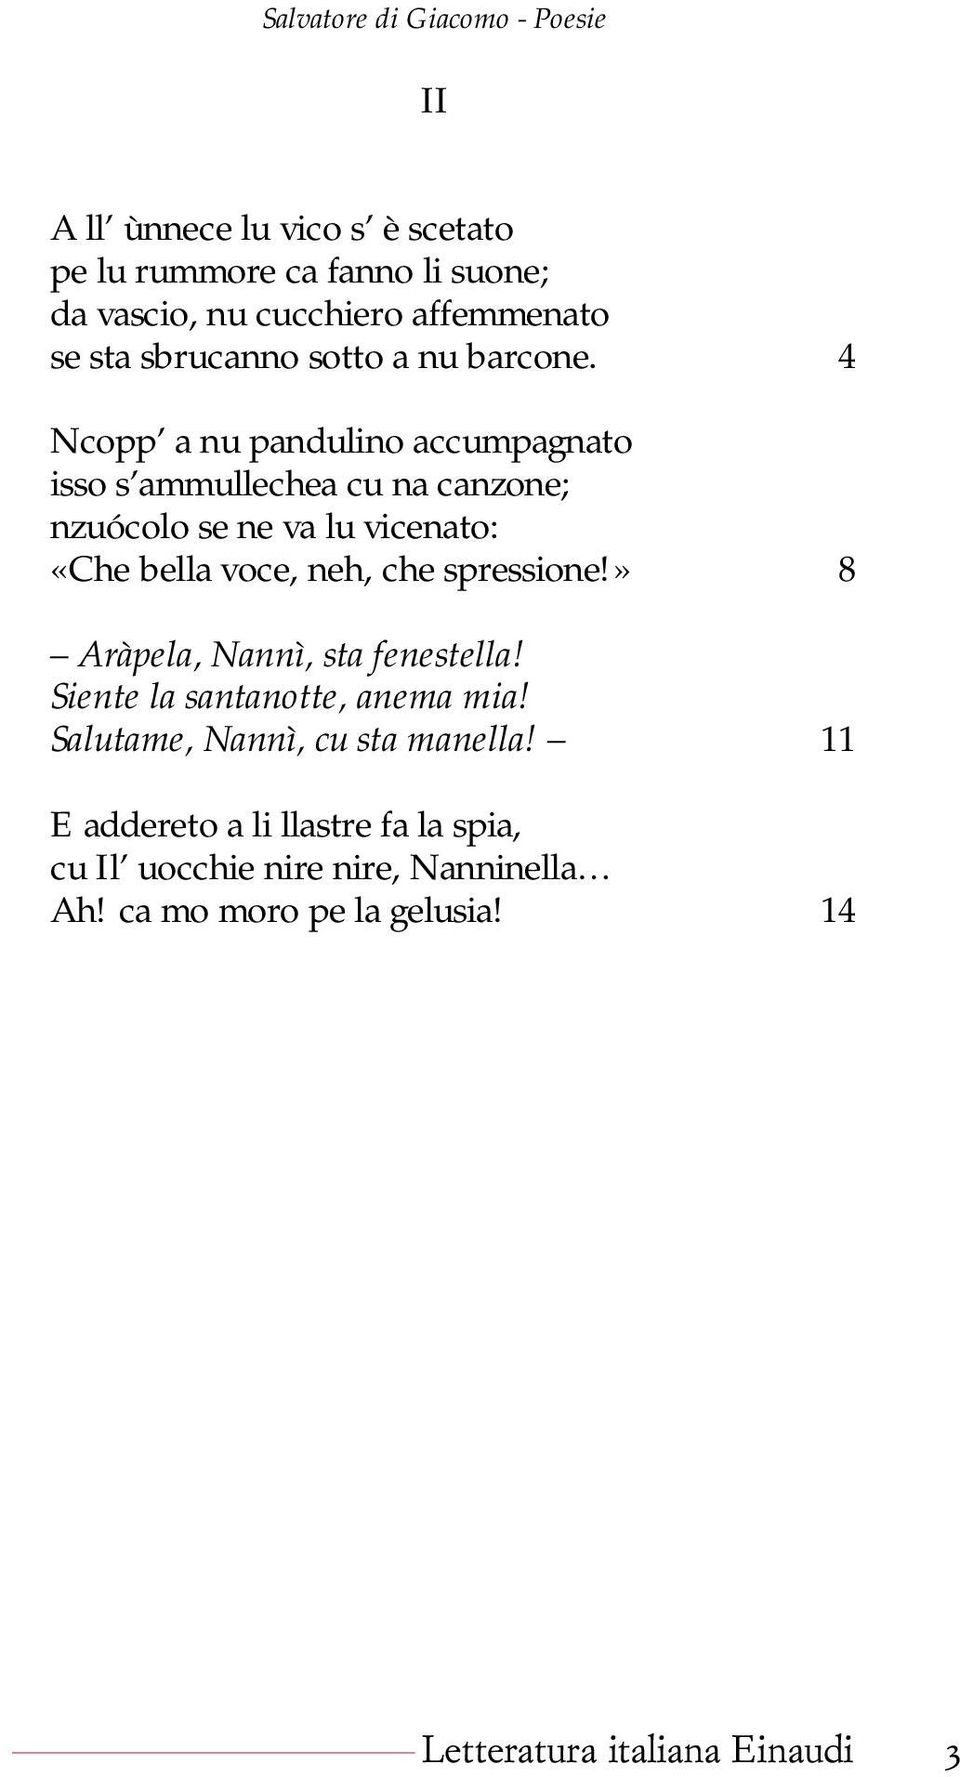 Poesie Di Natale In Napoletano.Poesie Di Salvatore Di Giacomo Letteratura Italiana Einaudi Pdf Free Download